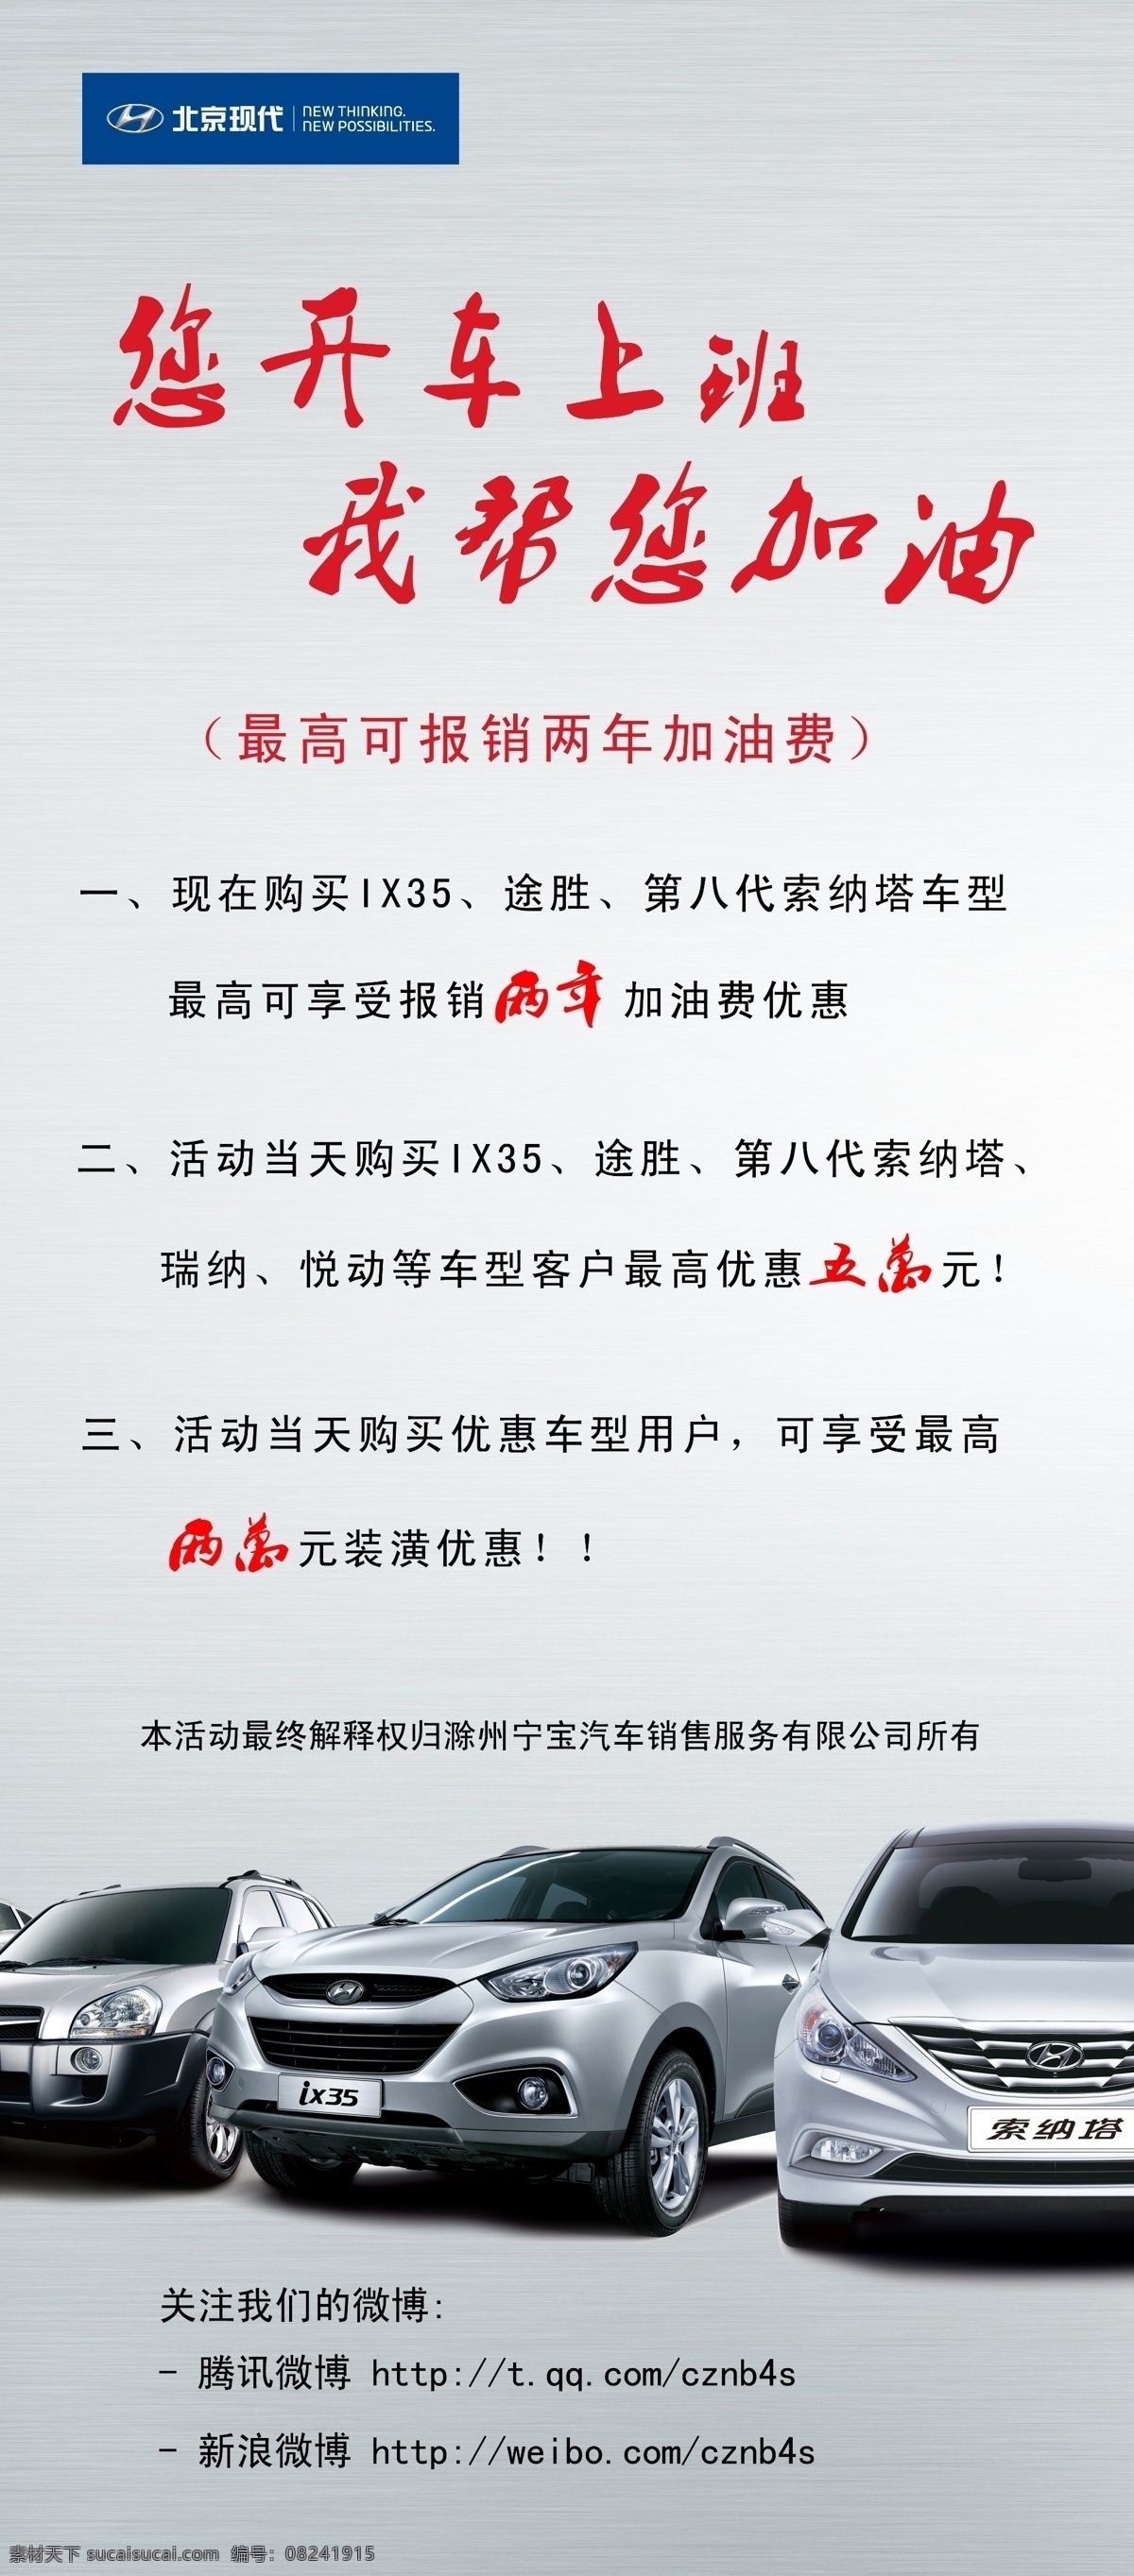 活动 展板 北京现代 广告设计模板 活动展板 开车 源文件 展板模板 滁州宁宝 ix35 免费加油 其他展板设计